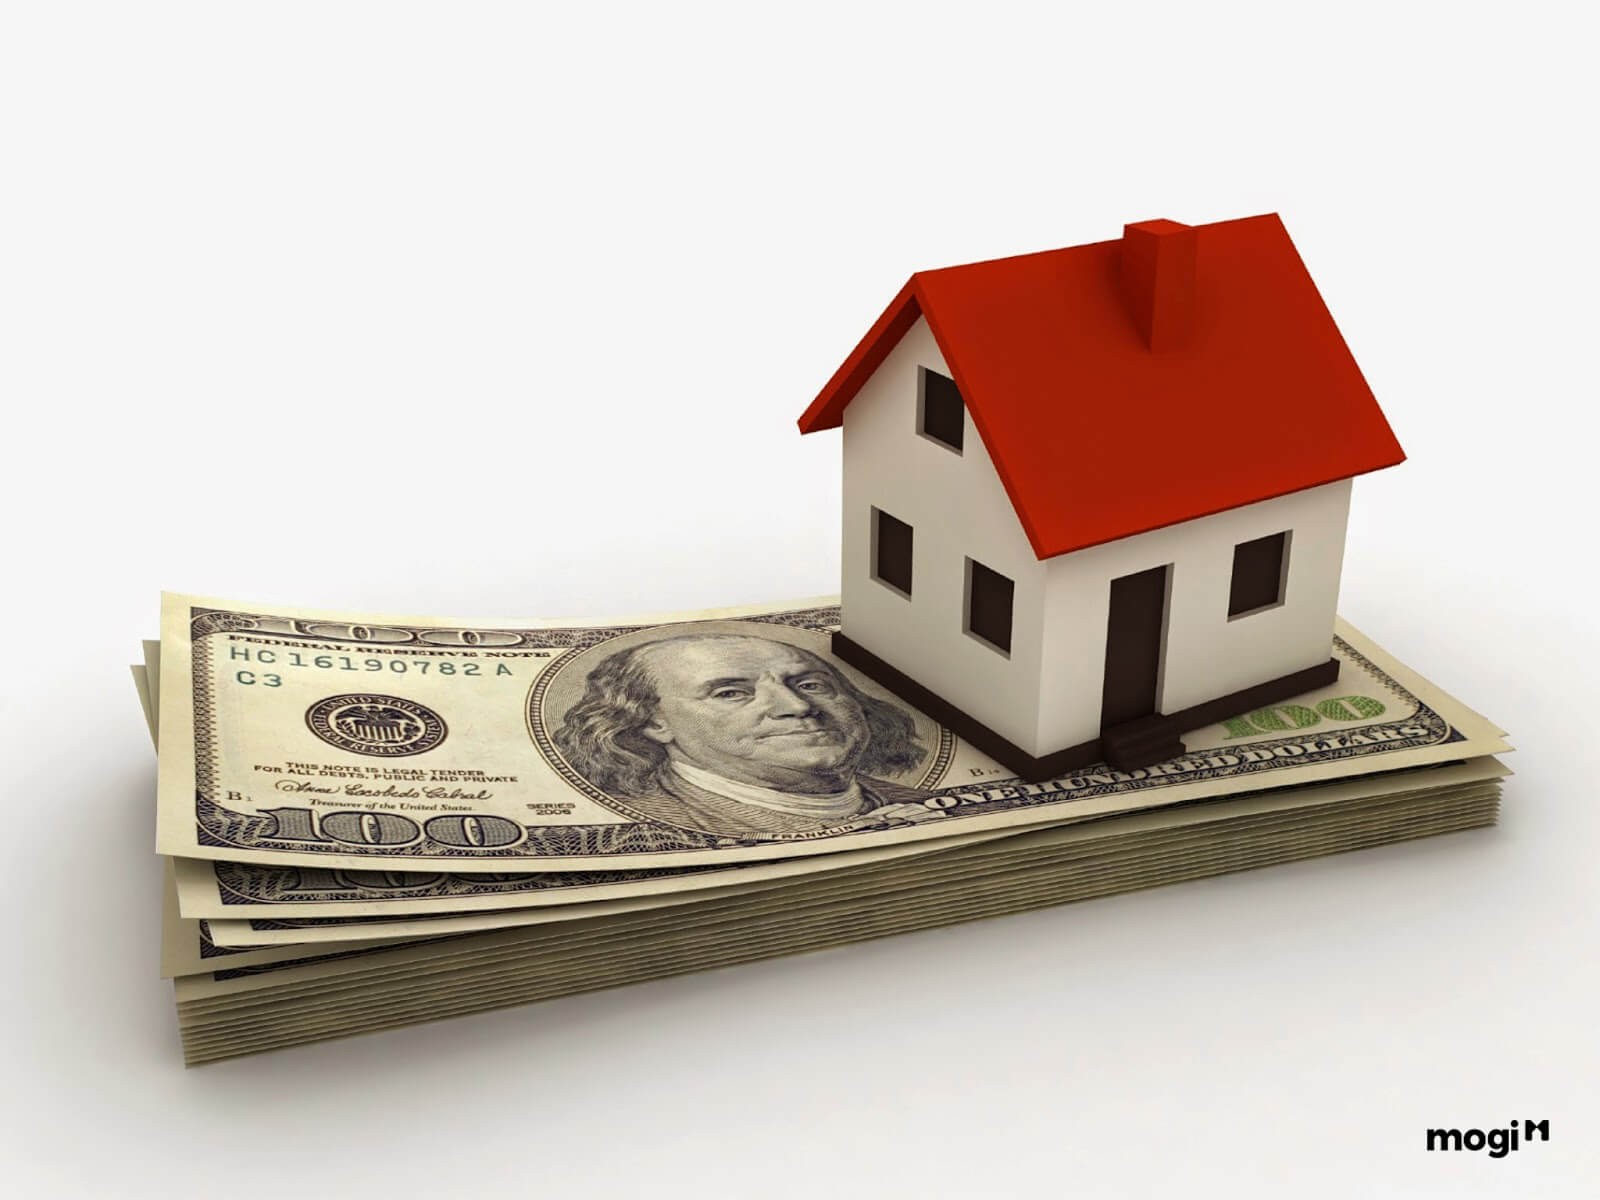 Làm gì để có tiền mua nhà?